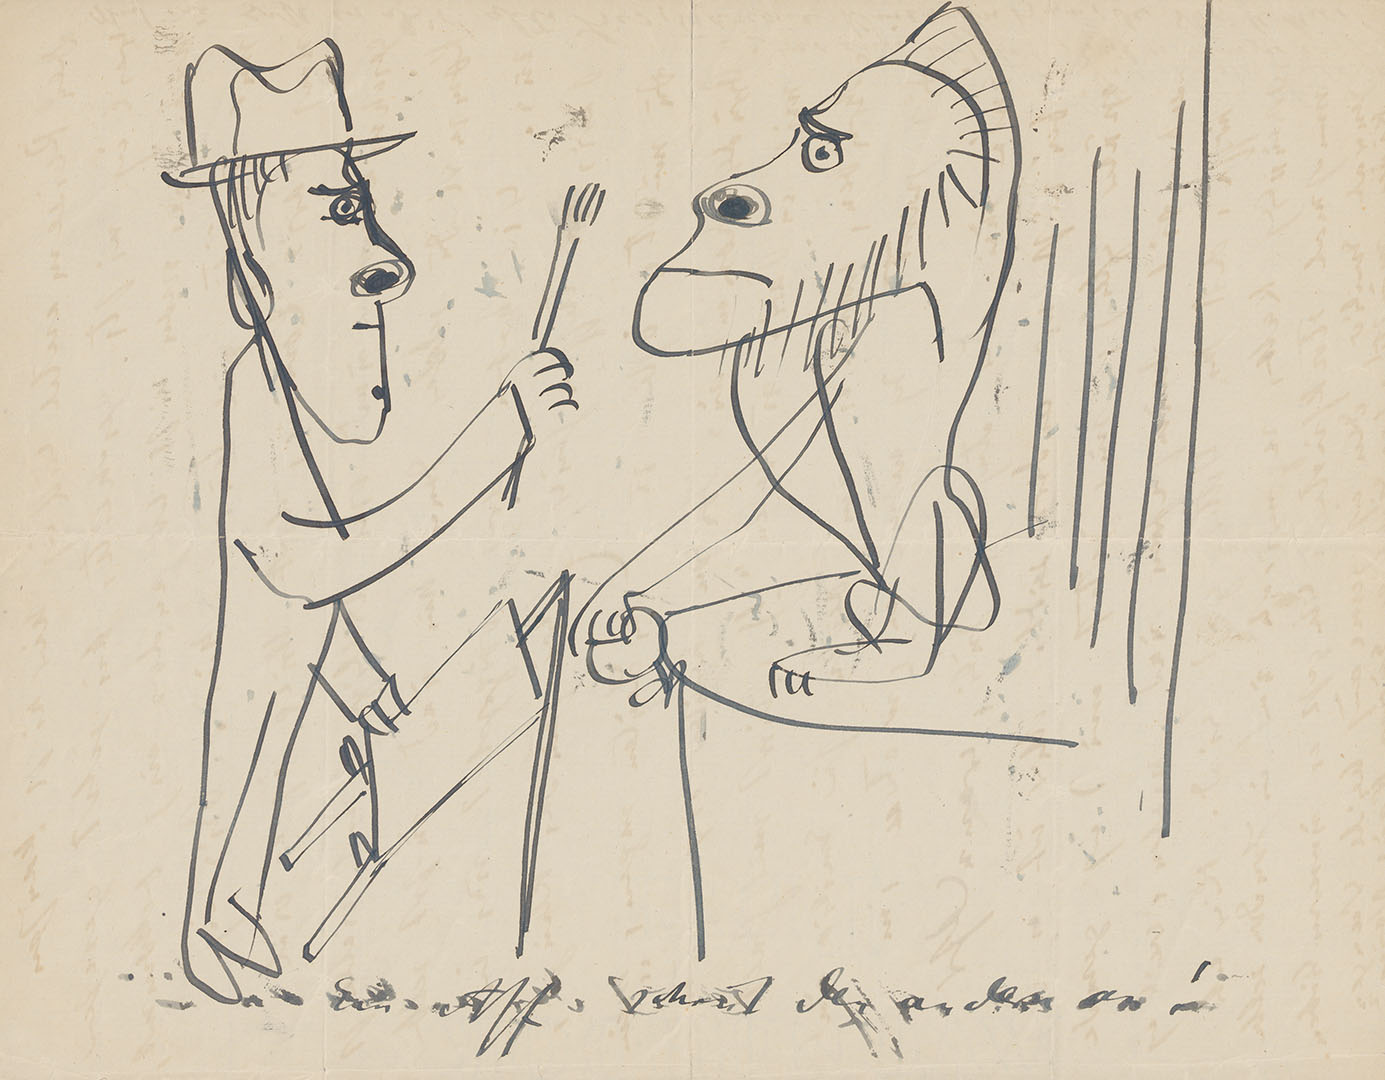 An example of Oskar Kokoschka’s often mischievous letter drawings: “One ape regards another”, summer 1926 (ZBZ, estate of O. Kokoschka 51.1)